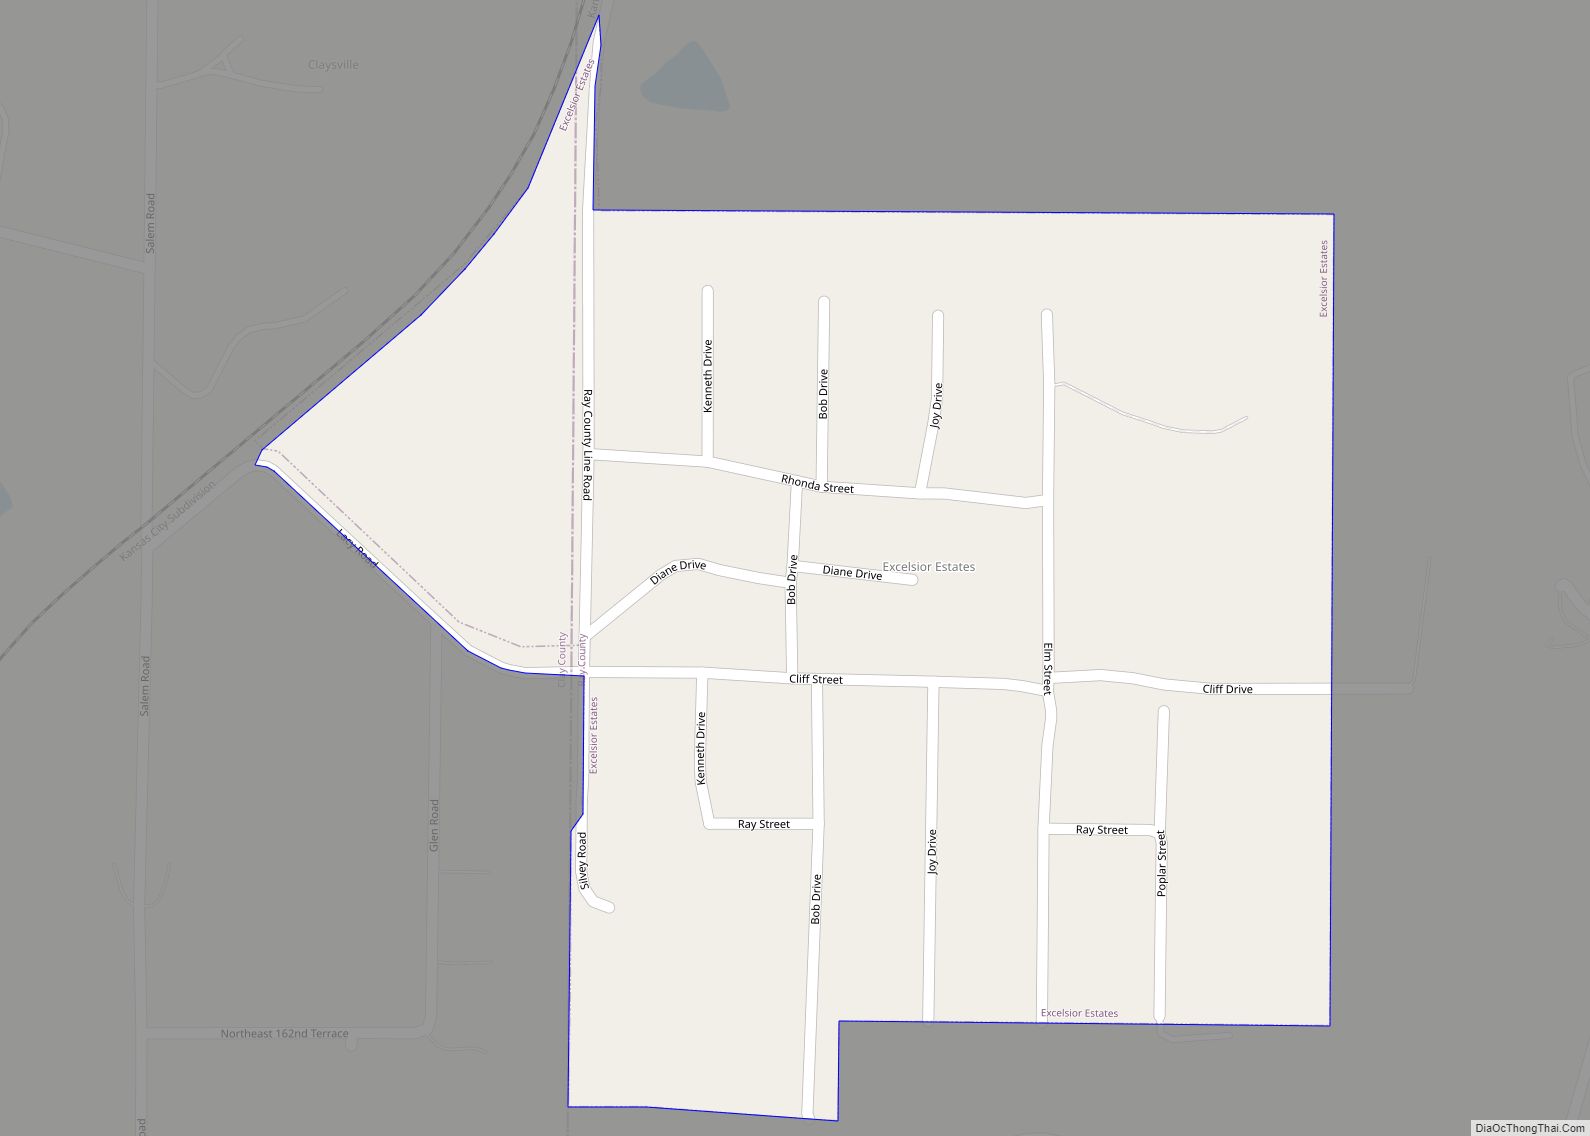 Map of Excelsior Estates village